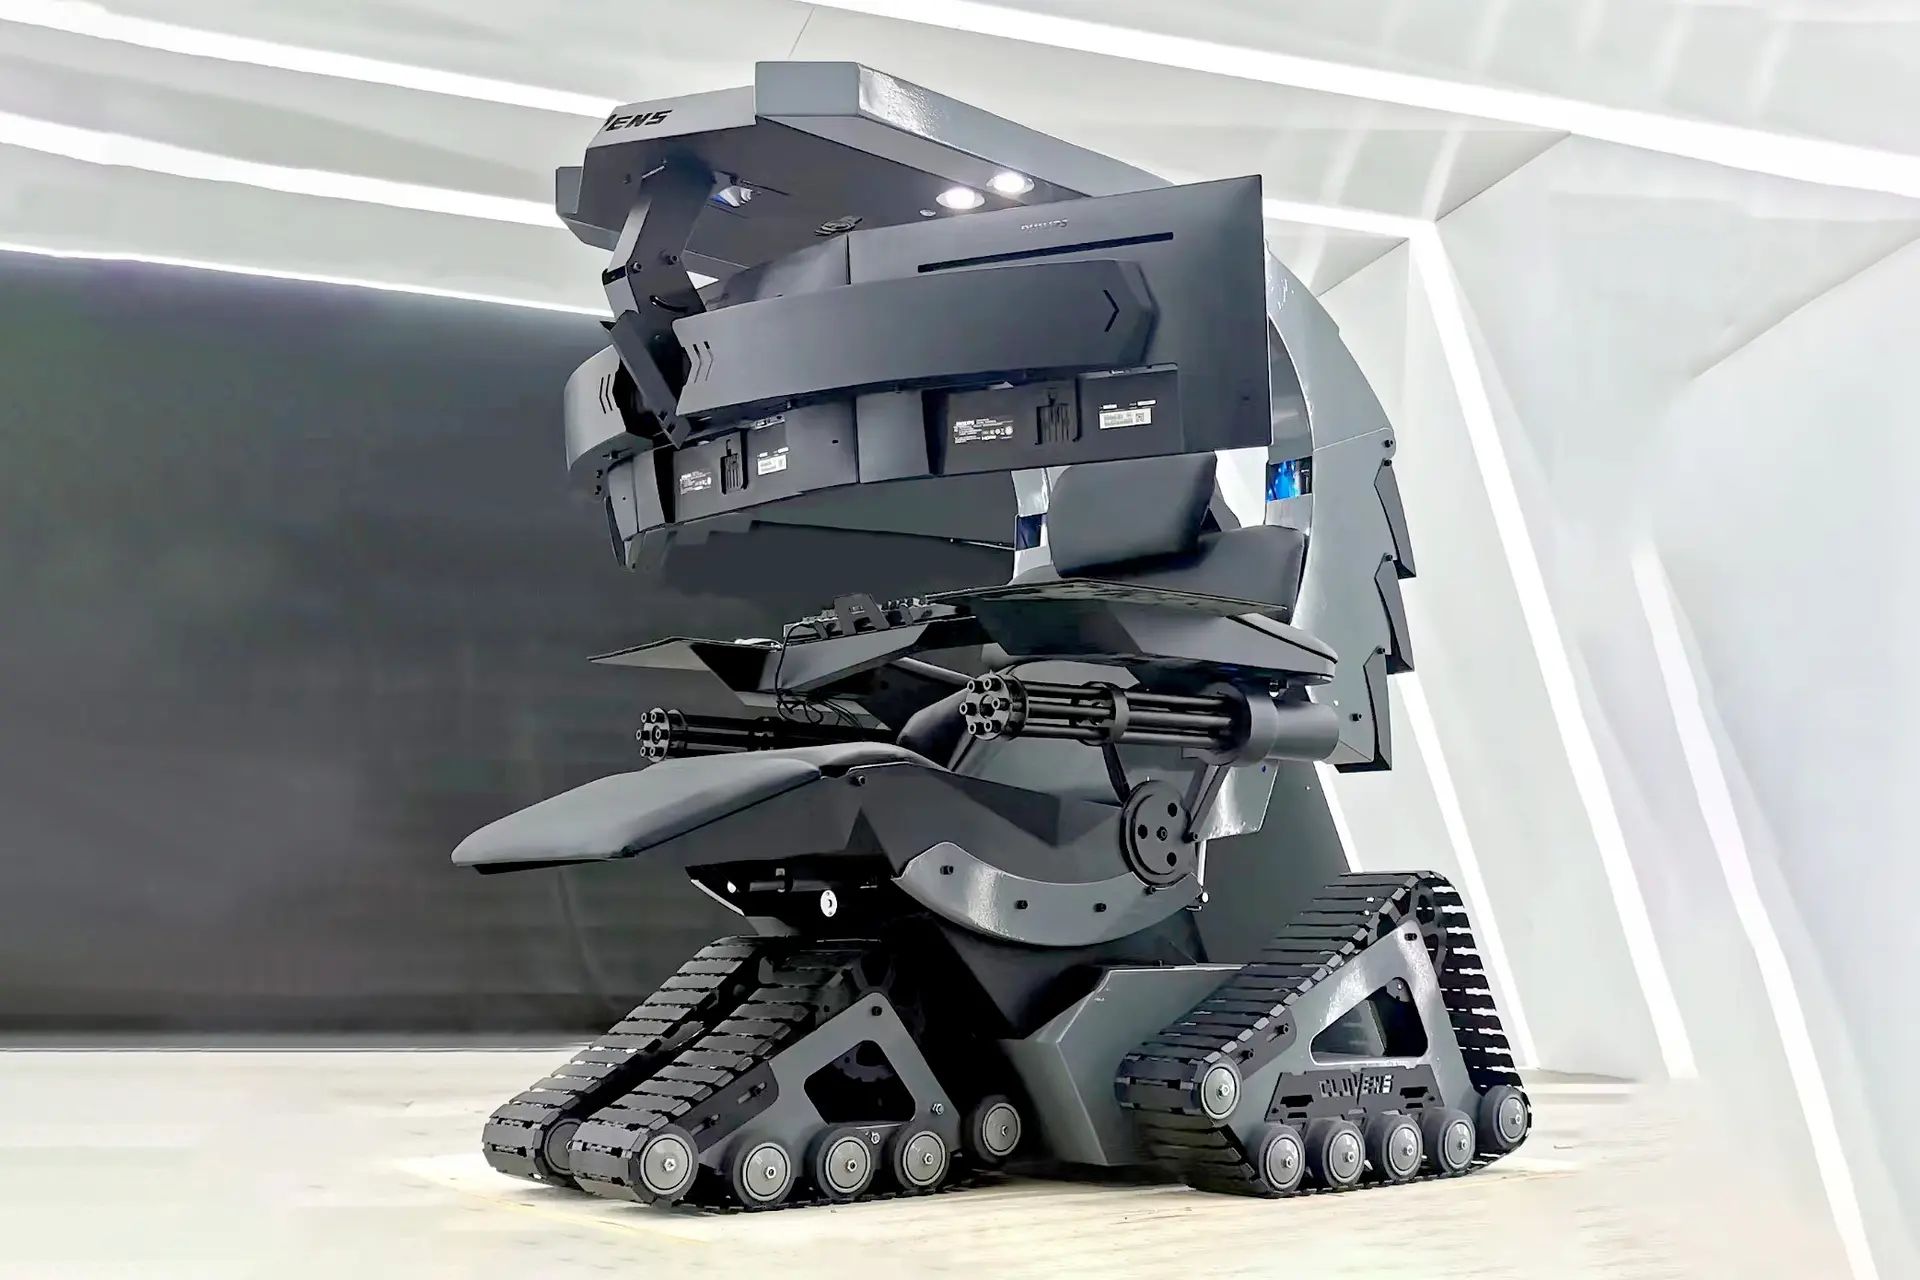 Кресло боевого робота Нет. Cluvens представила компьютерное кресло за $4200